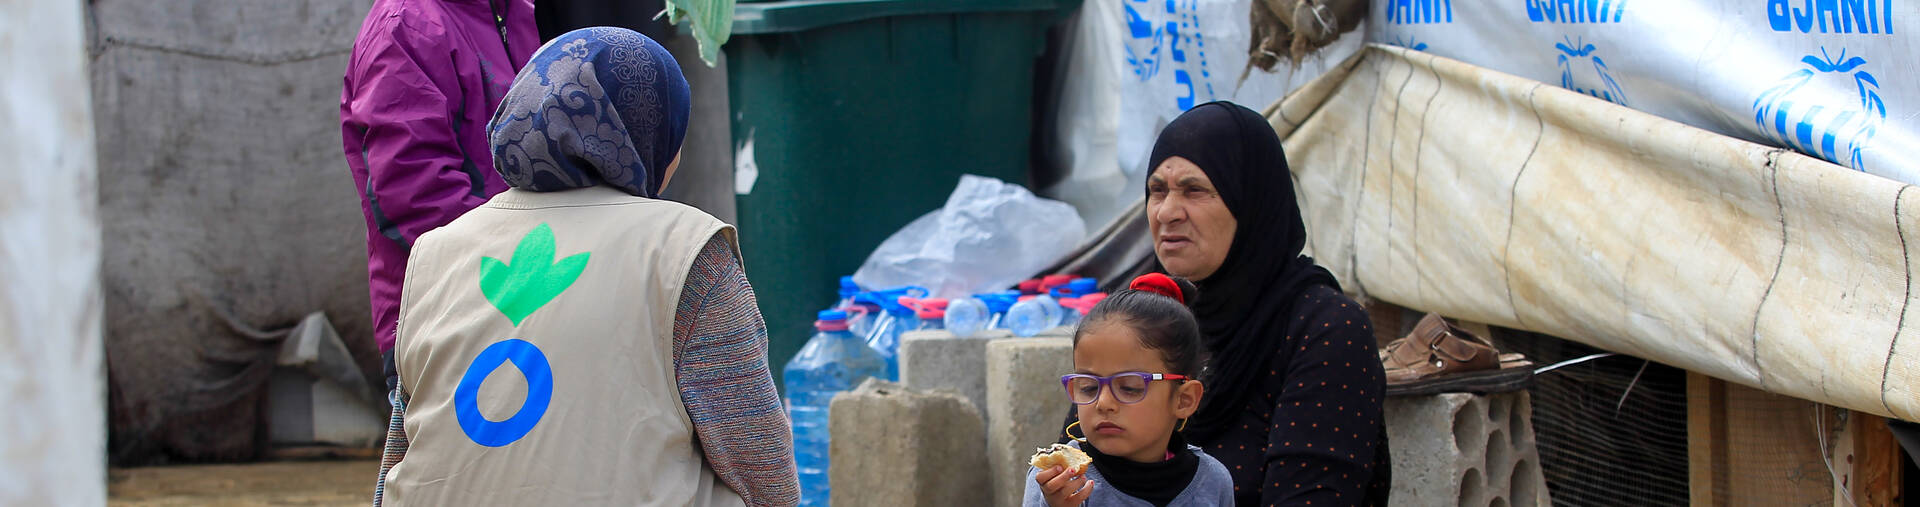 Mitarbeiterin von Aktion gegen den Hunger hilft syrischer Familie